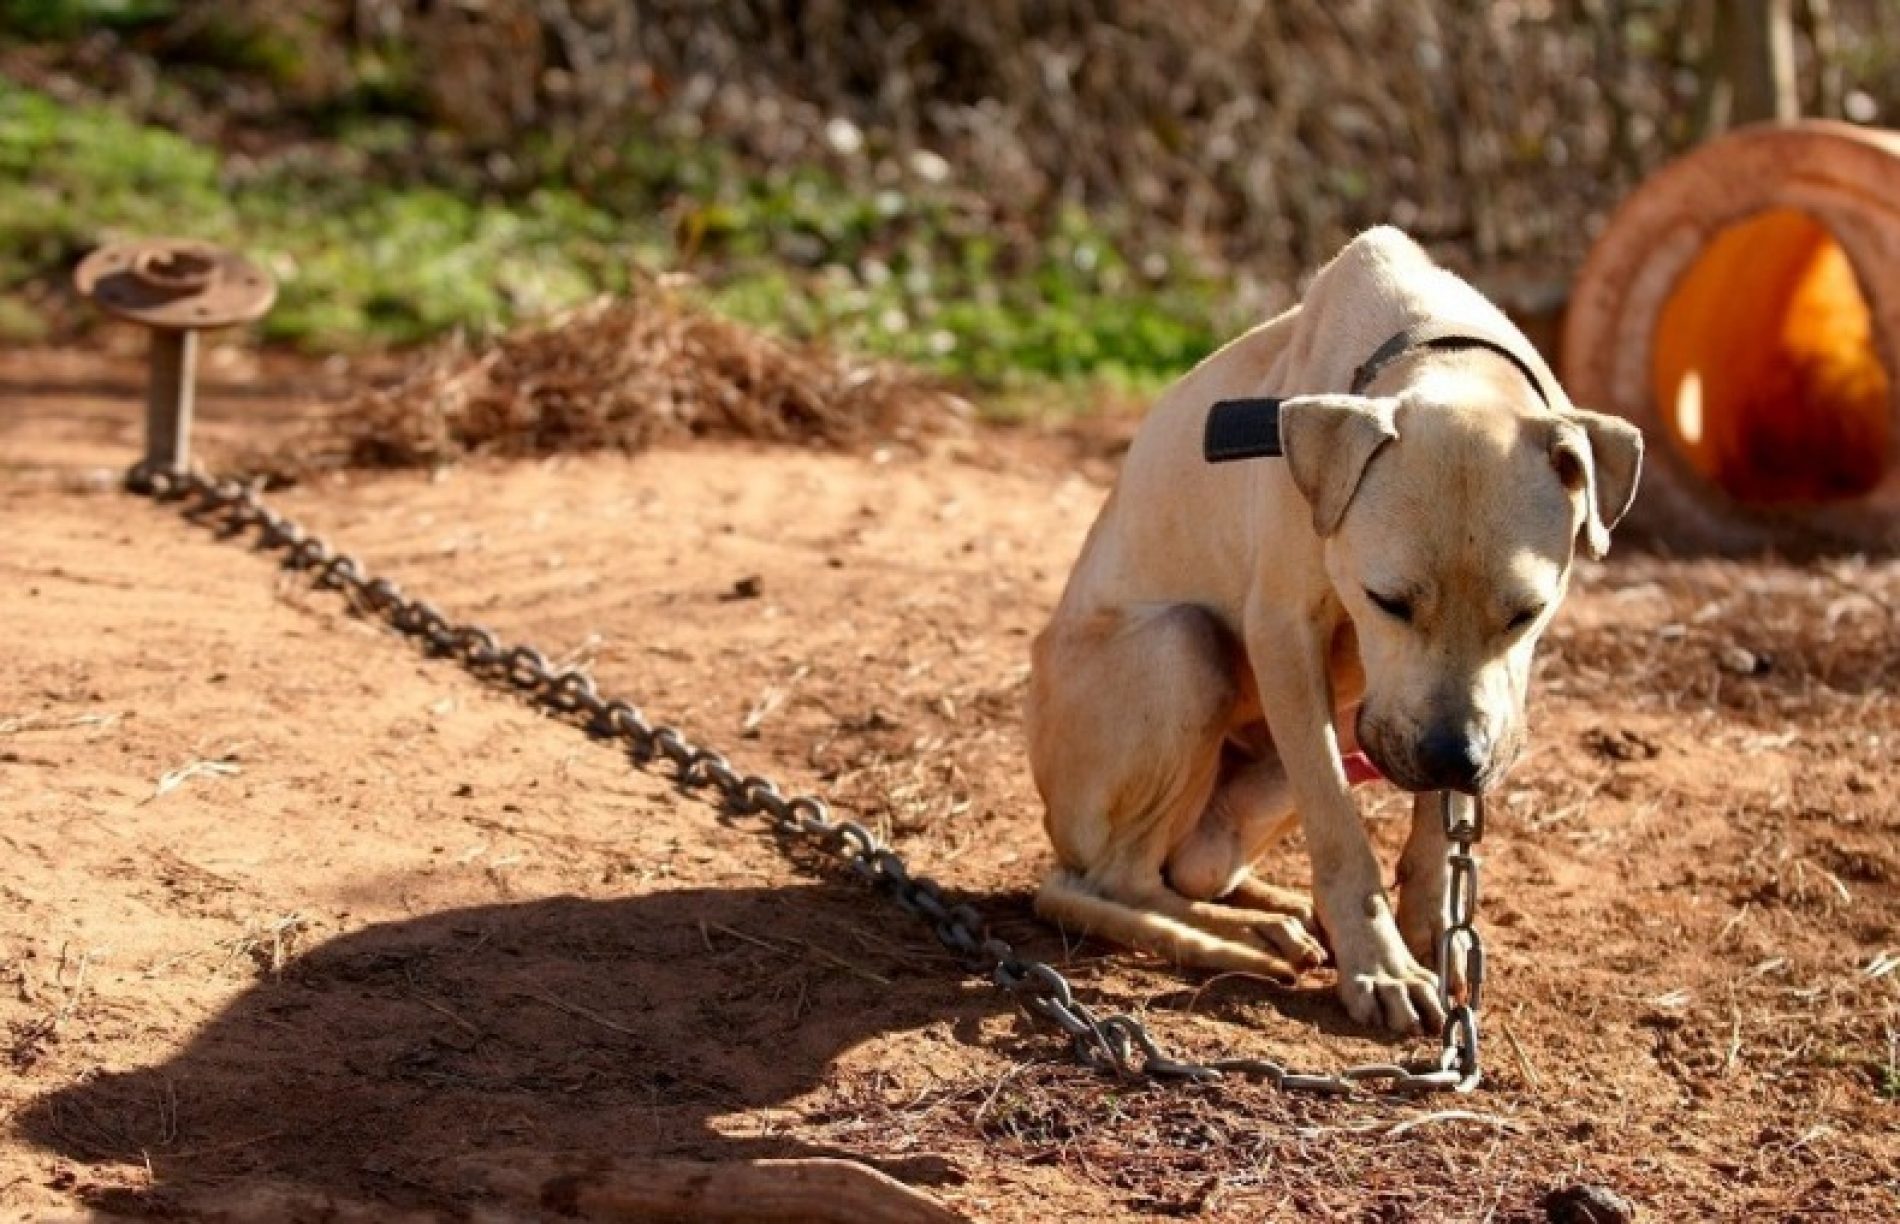 MUNDO ANIMAL: Mudança na lei pune com multa quem acorrentar animal em local inadequado